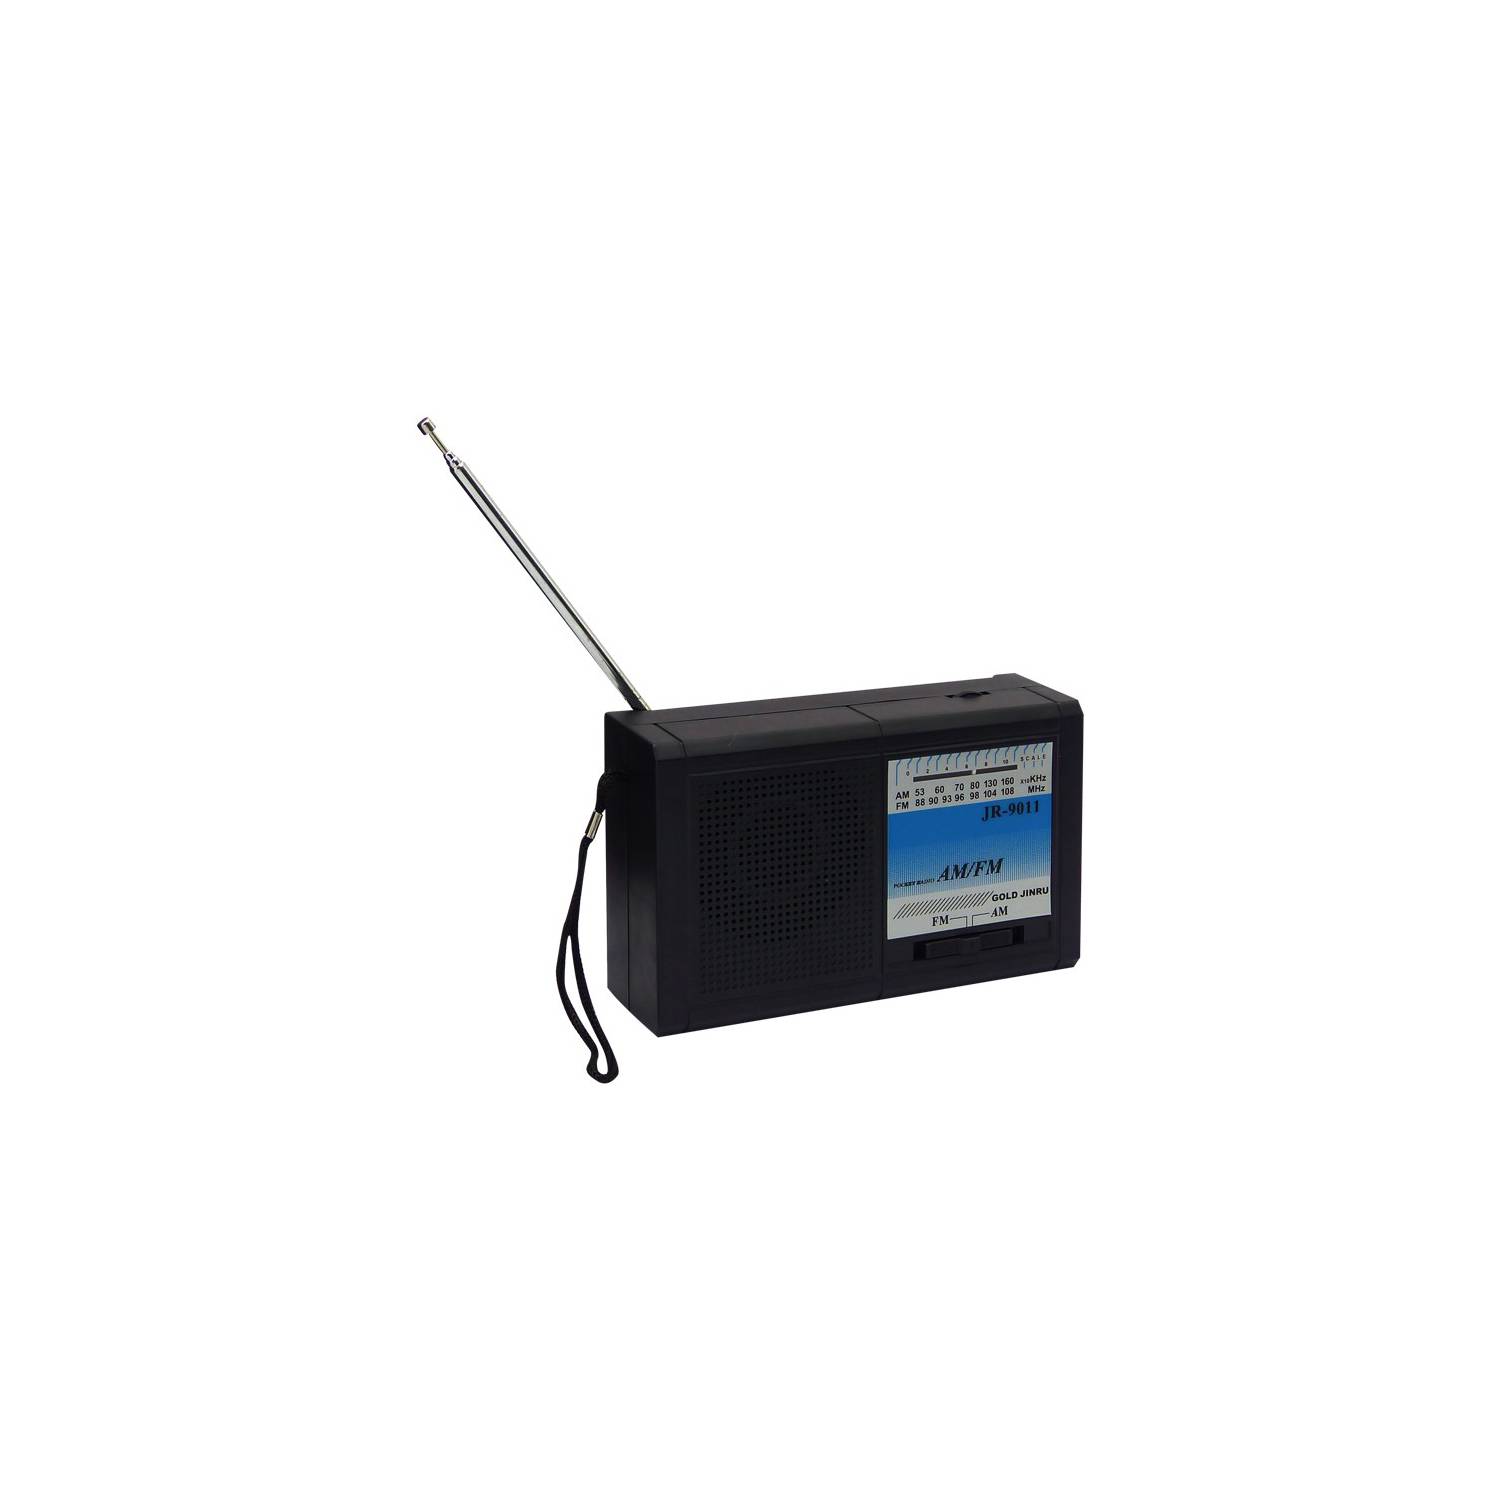 Radio a Pilas Fm/Am Portable JR-9011 Por Mayor